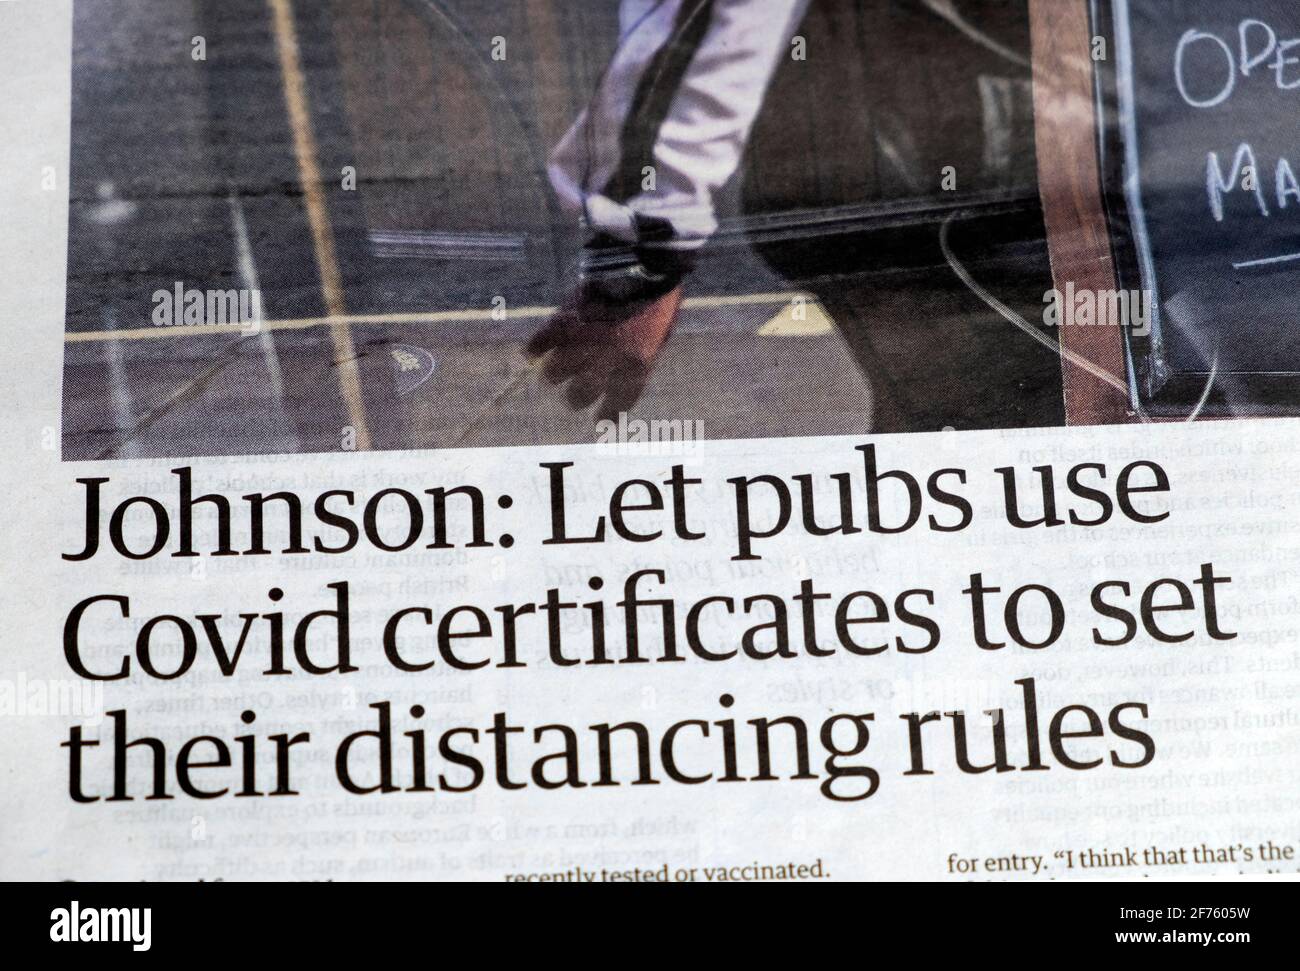 Boris 'Johnson: Deje que los pubs utilicen certificados Covid para establecer sus reglas de distanciamiento' artículo titular del periódico en Guardian 25 de marzo de 2021 Londres Reino Unido Foto de stock